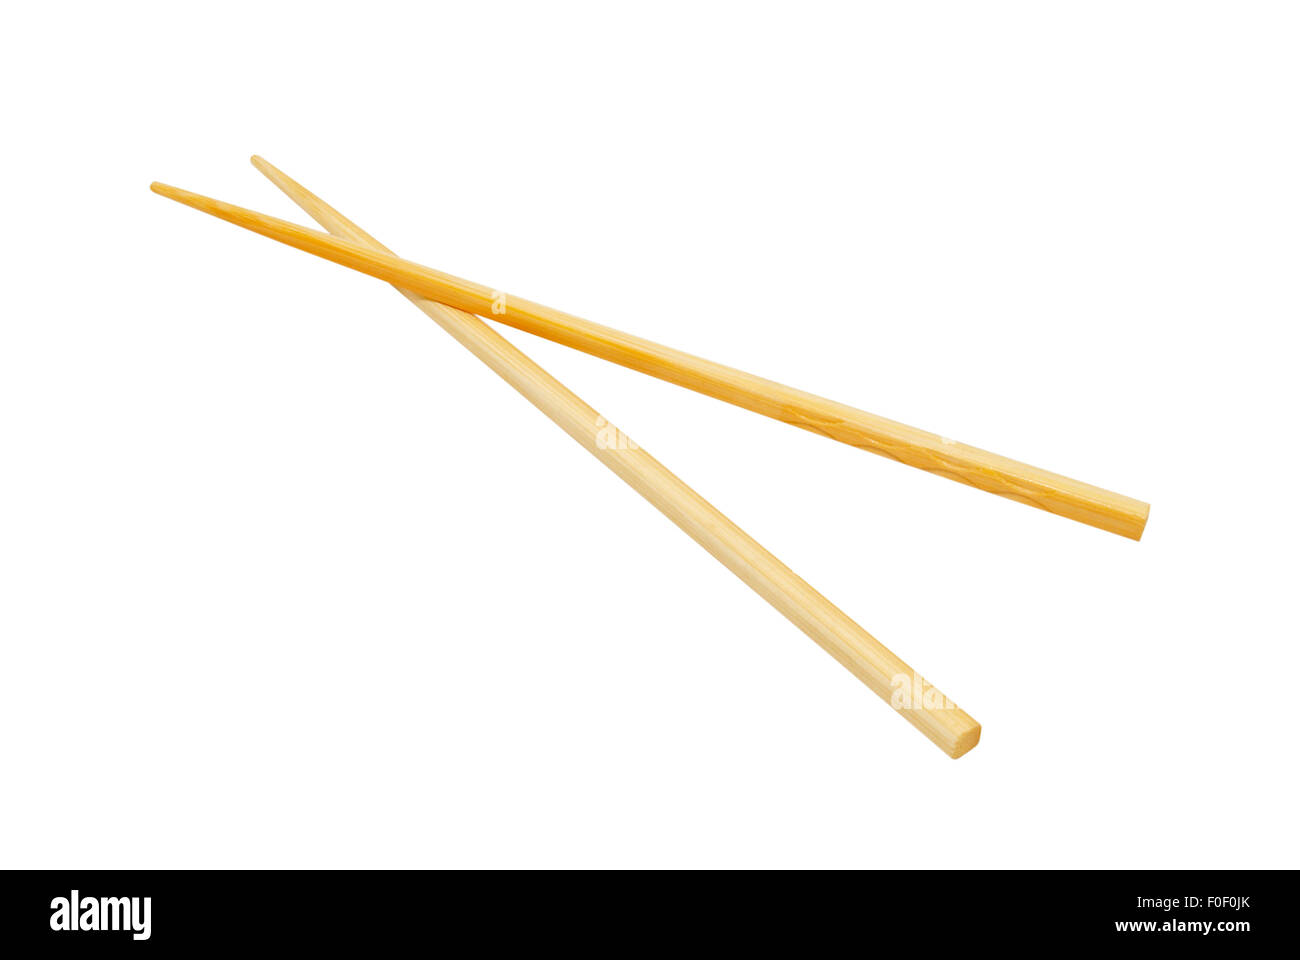 Chopsticks isolated on white. Stock Photo